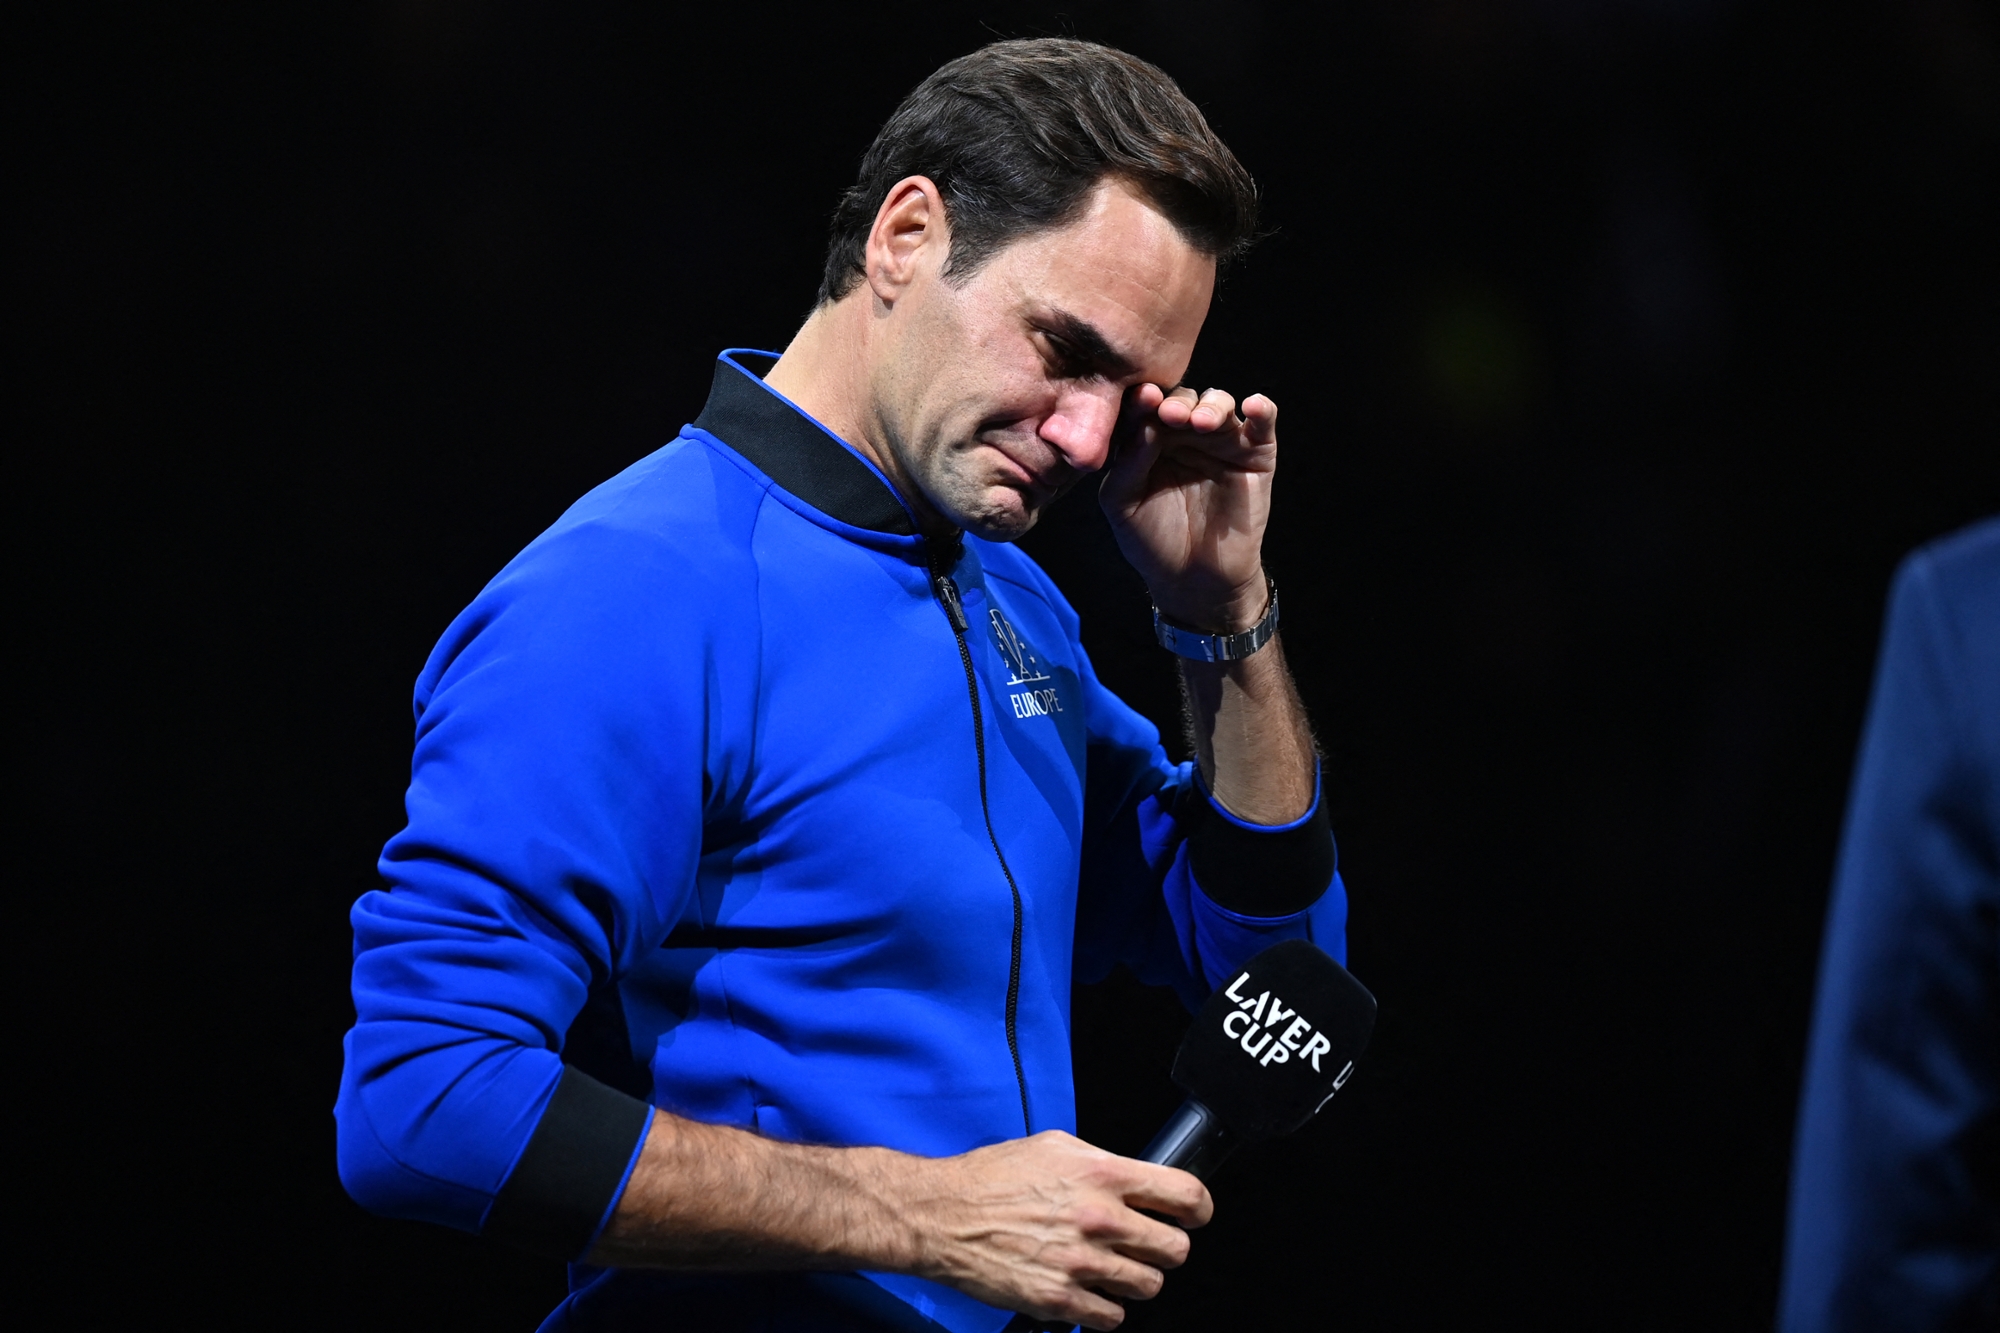 Lacrime e commozione, a Londra l’addio al tennis di Federer